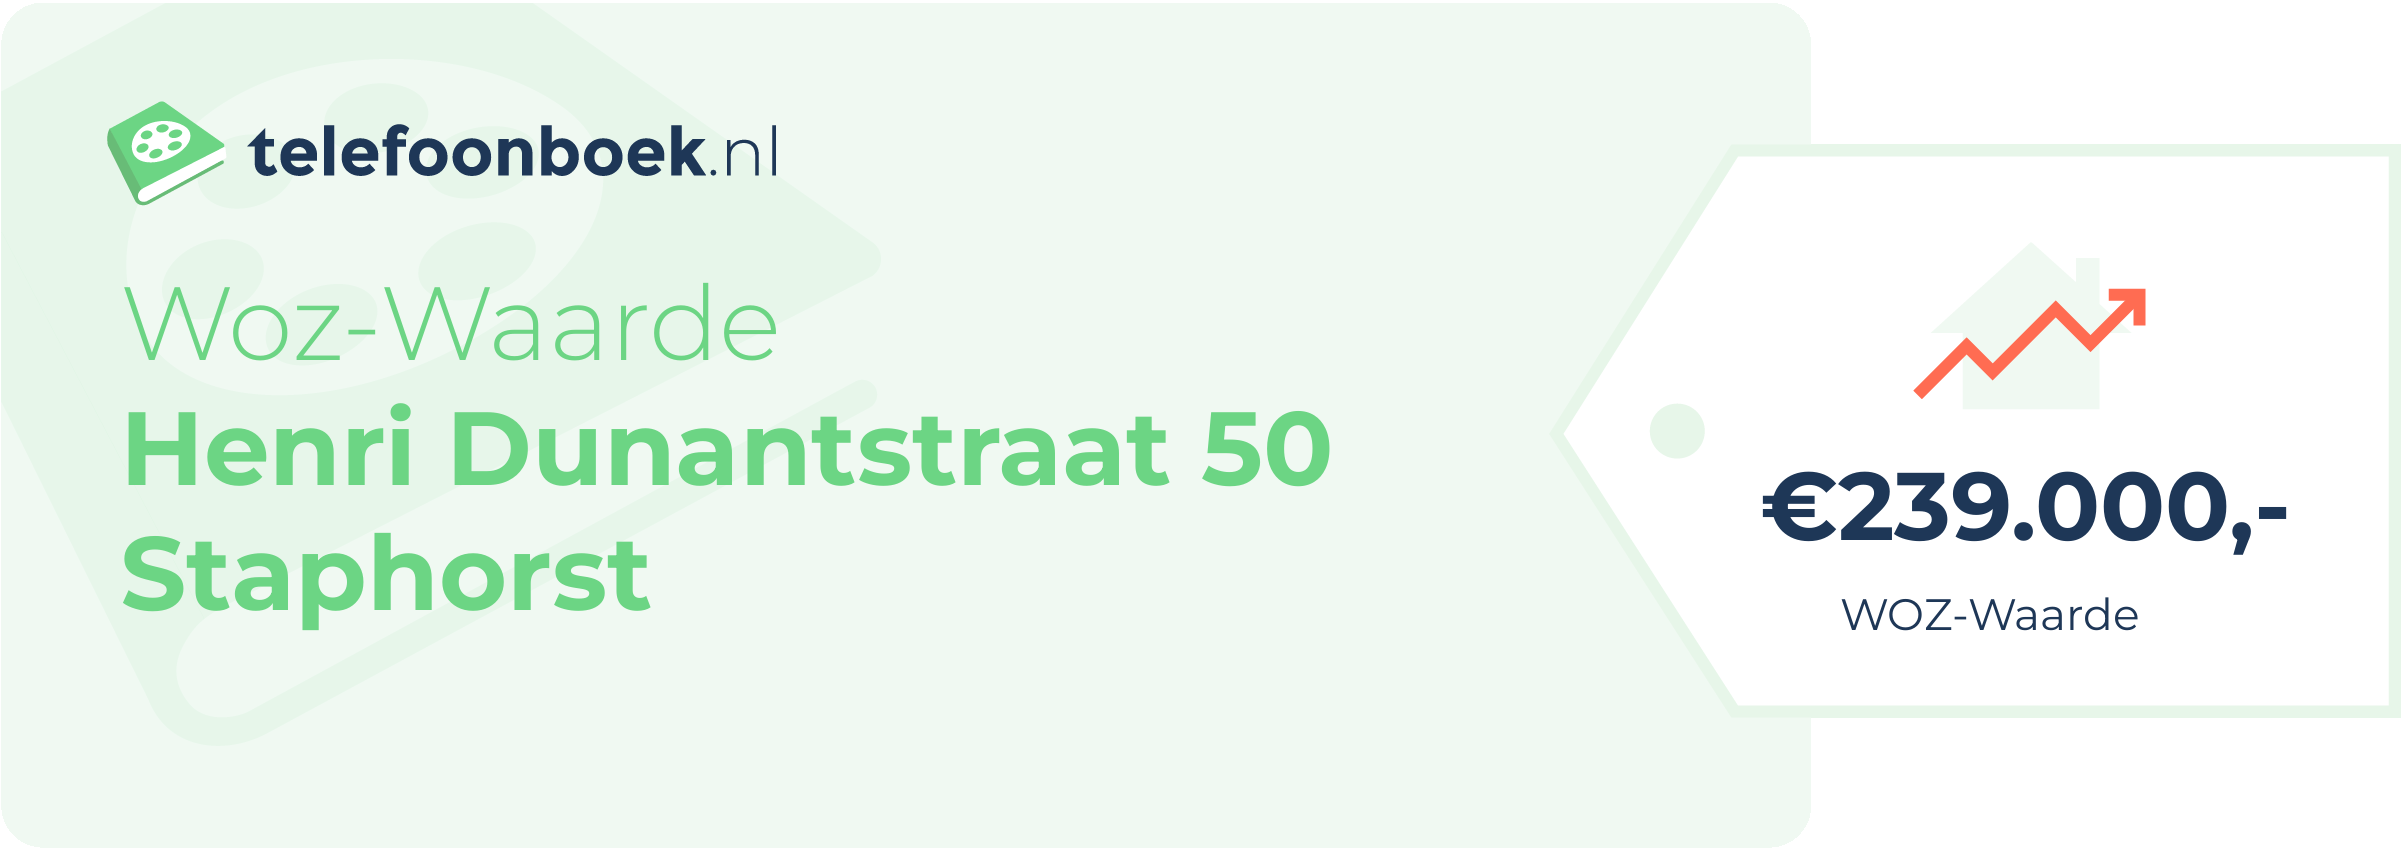 WOZ-waarde Henri Dunantstraat 50 Staphorst